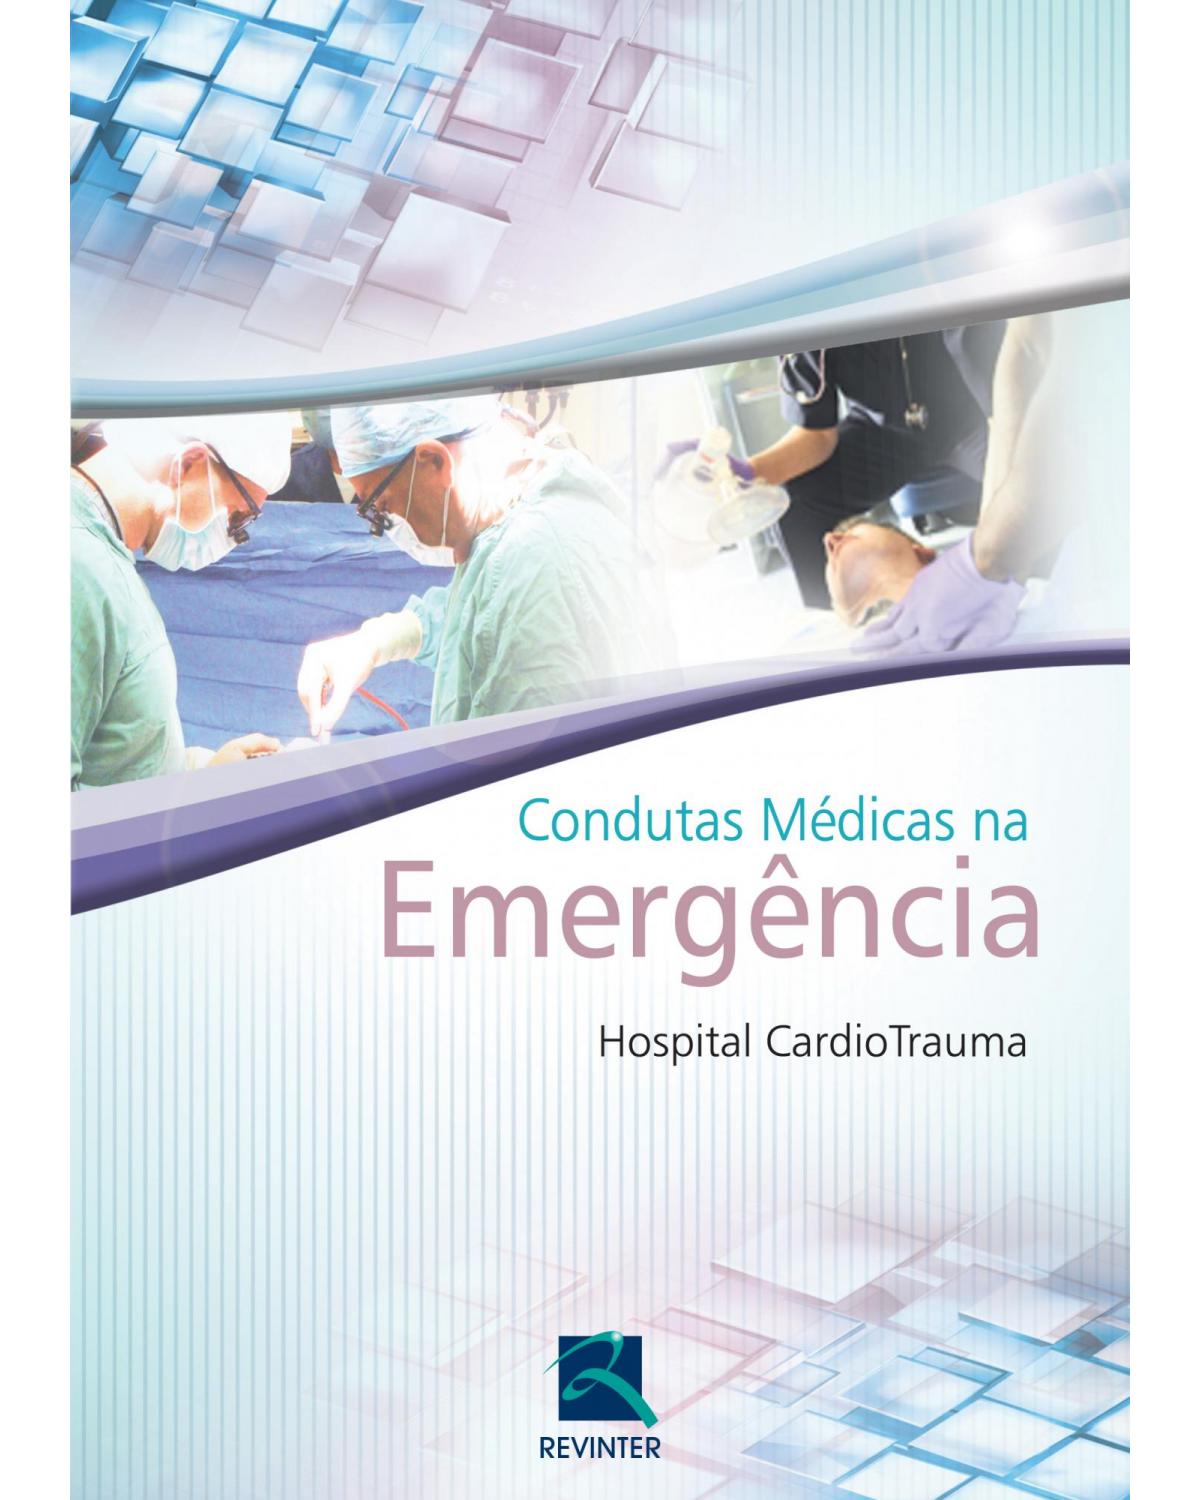 Condutas médicas na emergência - Hospital CardioTrauma - 1ª Edição | 2012